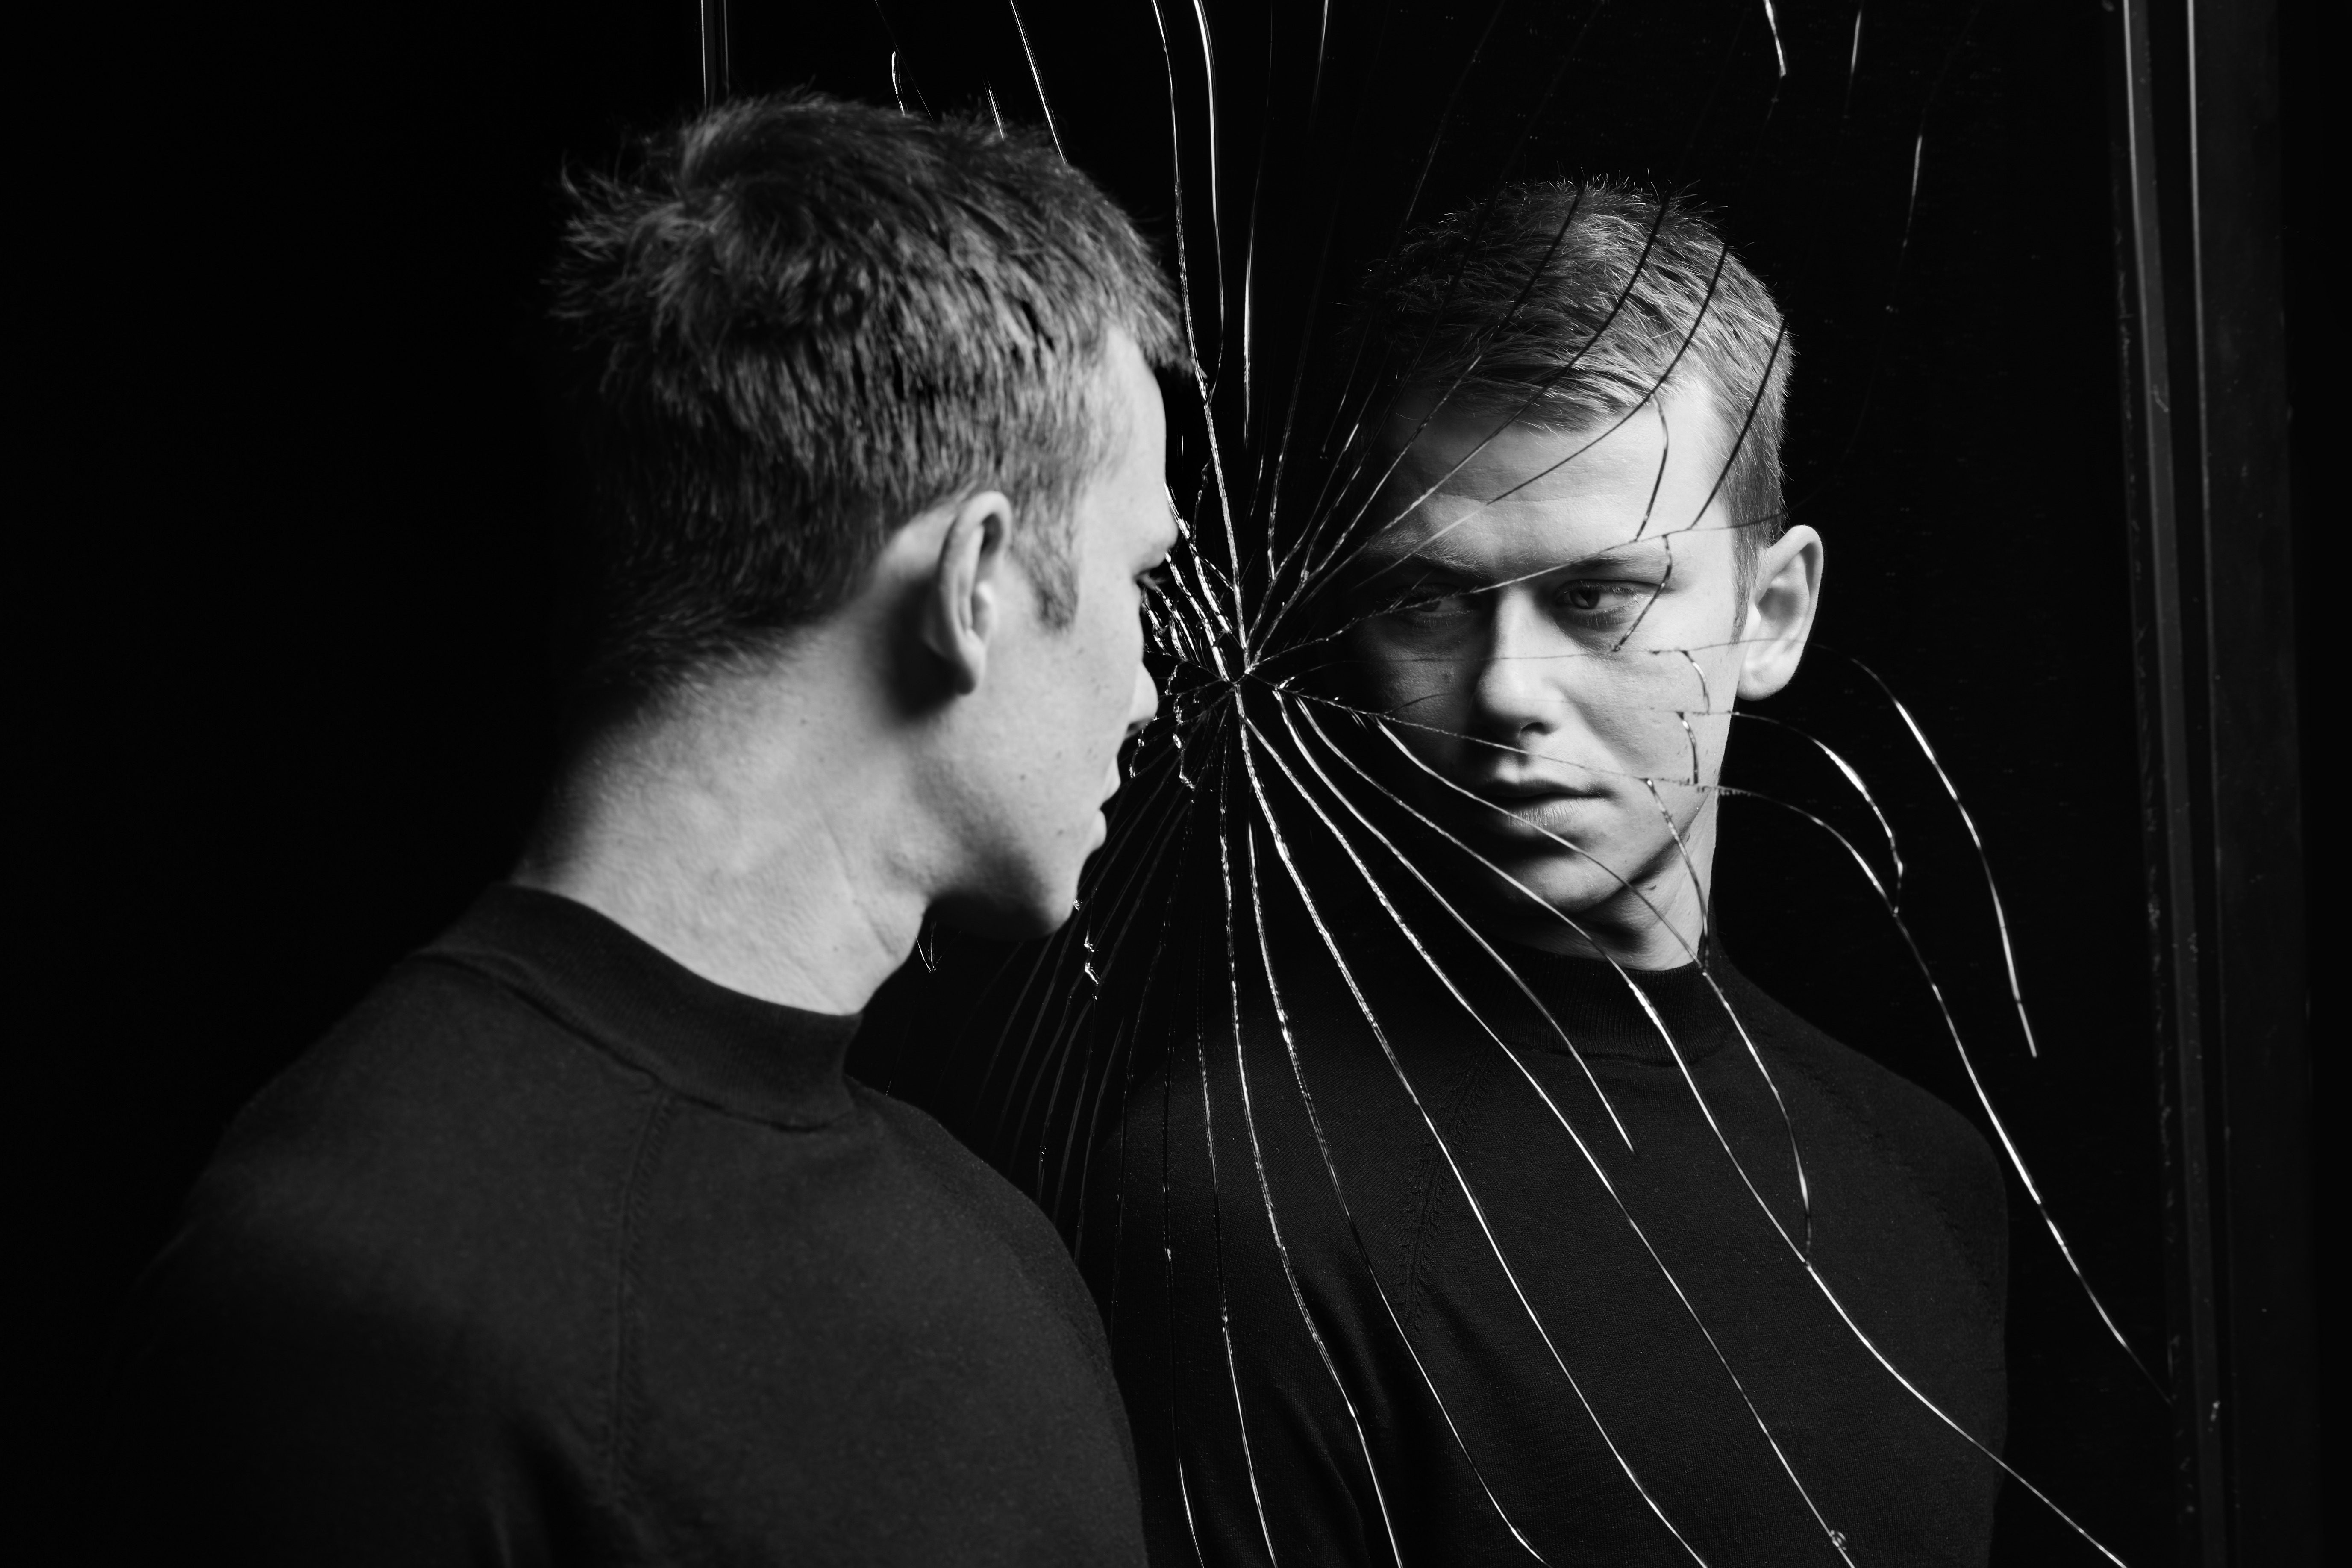 Publiciteitsfoto van Dorian; zwart-witfoto van een jonge man die naar zichzelf kijkt in een gebroken spiegel